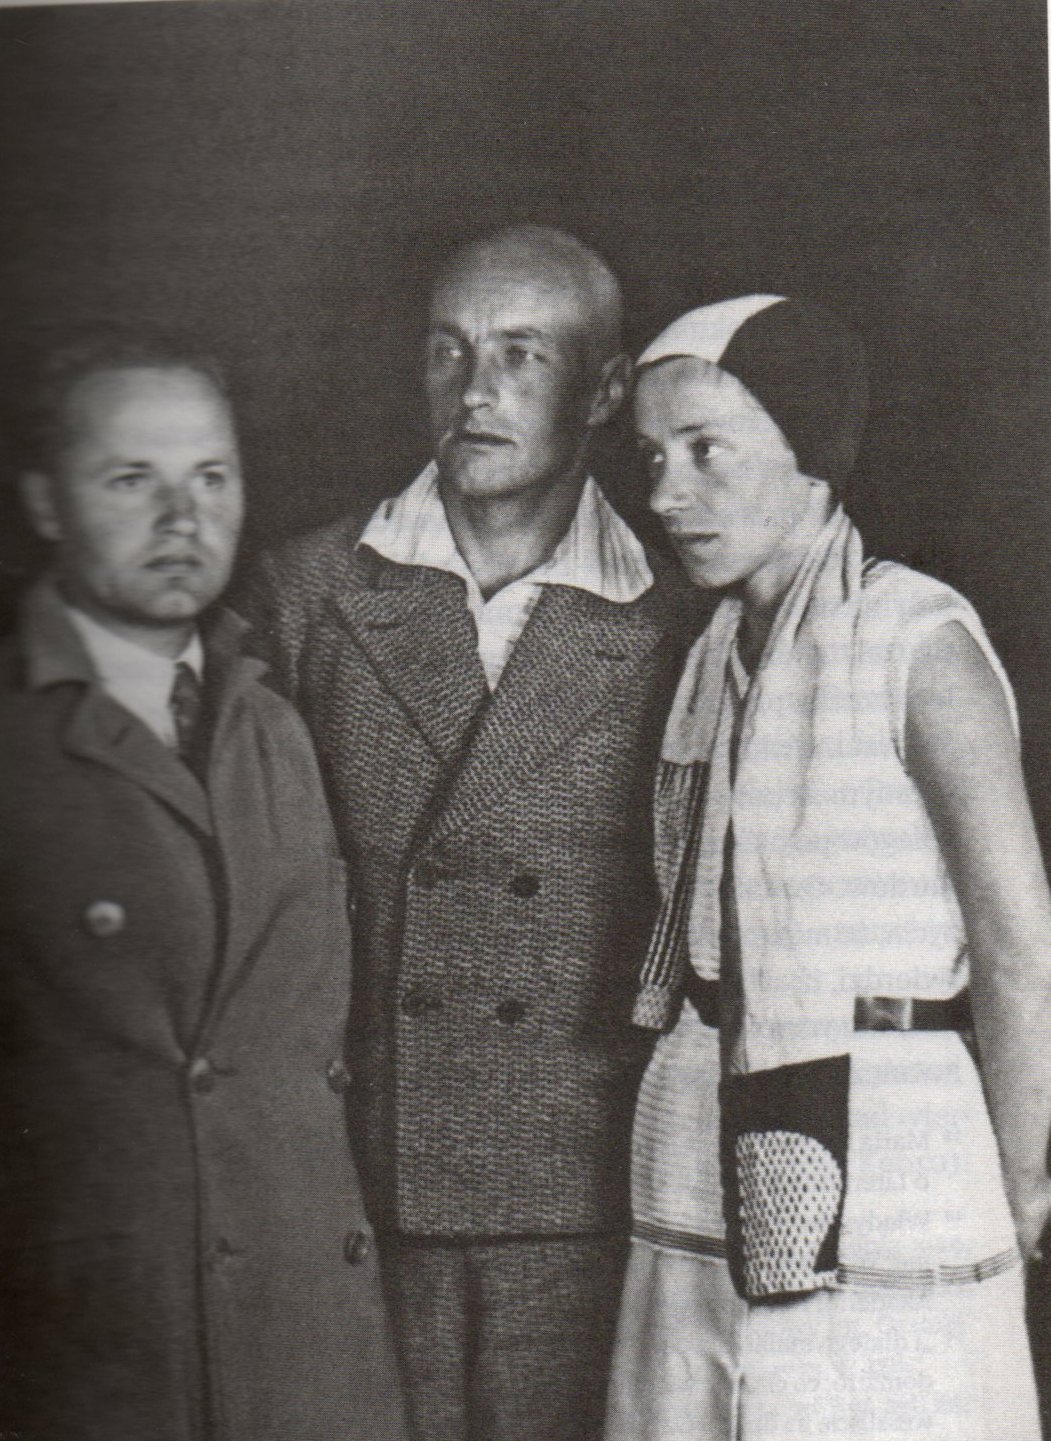 Przyboś, Strzemiński i Kobro, około 1930 roku, źródło fotografii: Muzeum Sztuki w Łodzi